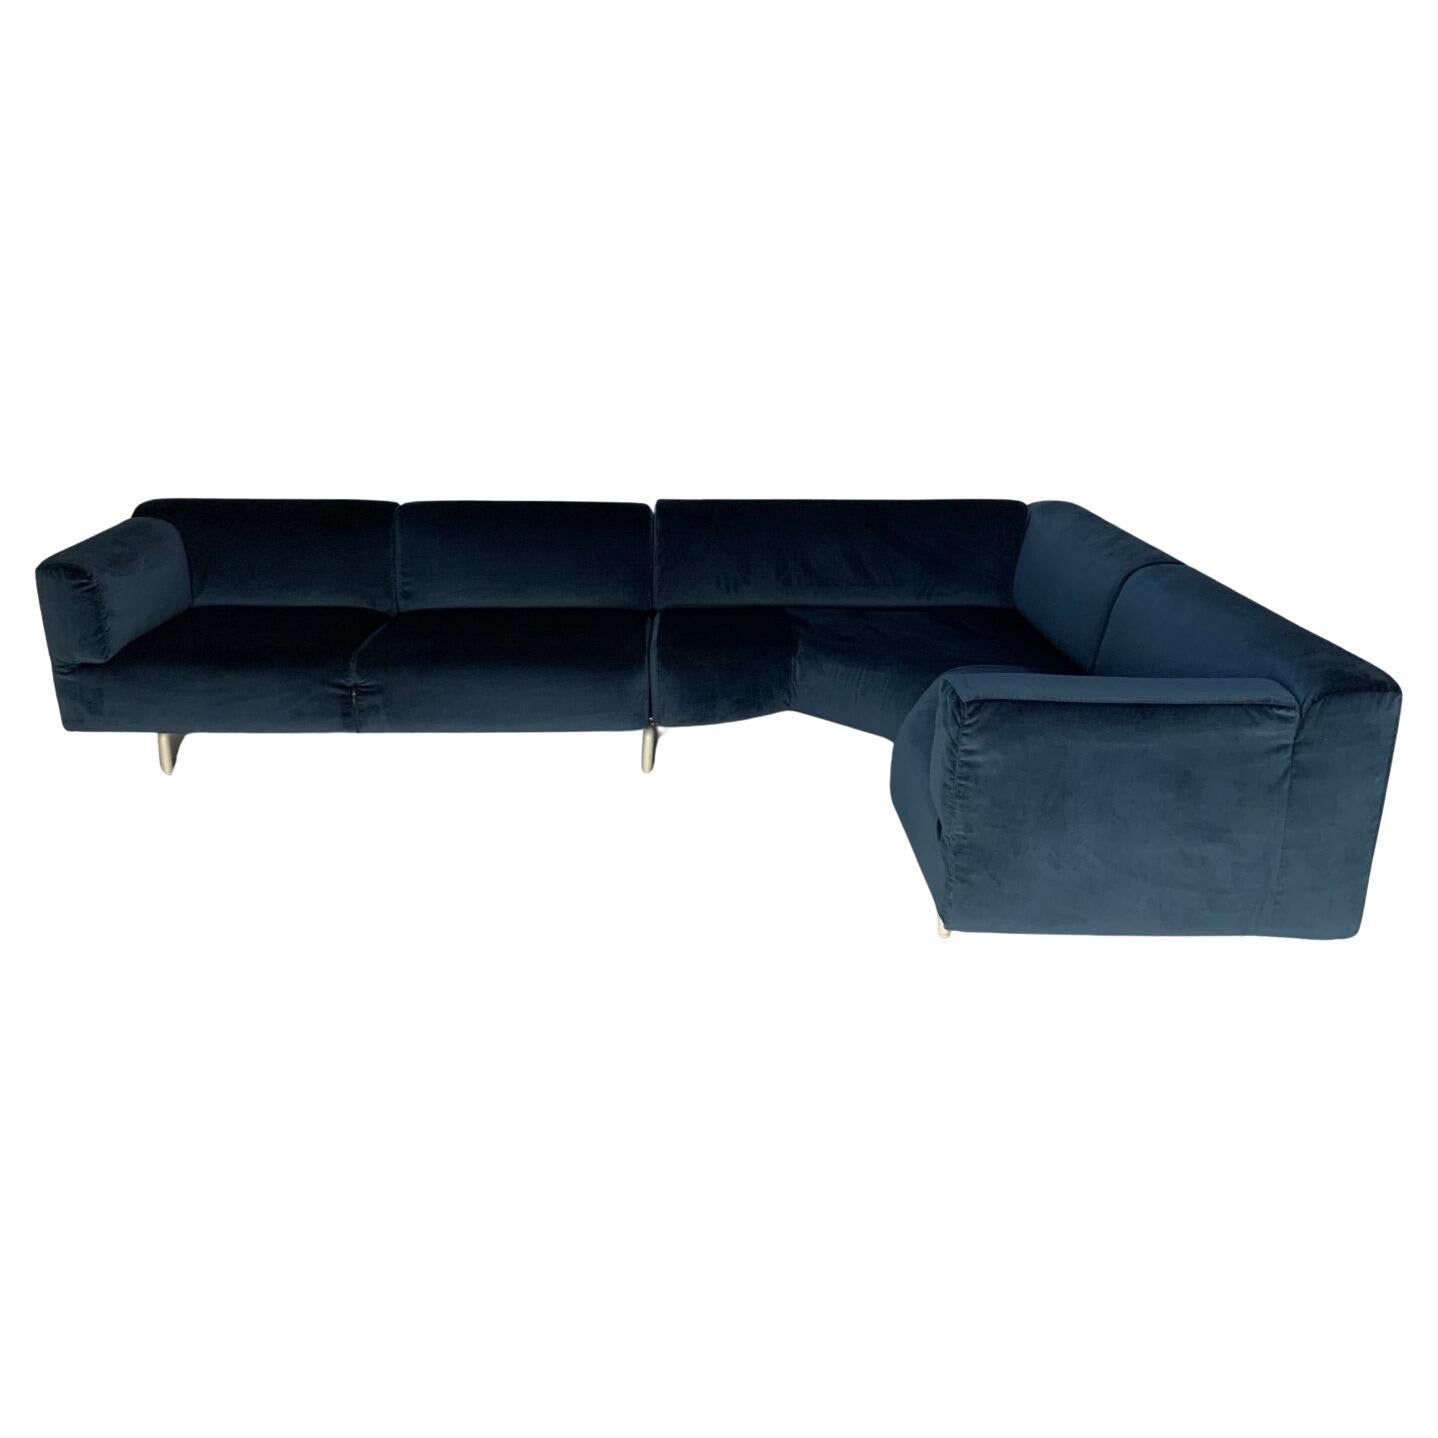 Cassina "250 Met" L-Shape Sectional Sofa - In Navy Blue Velvet 